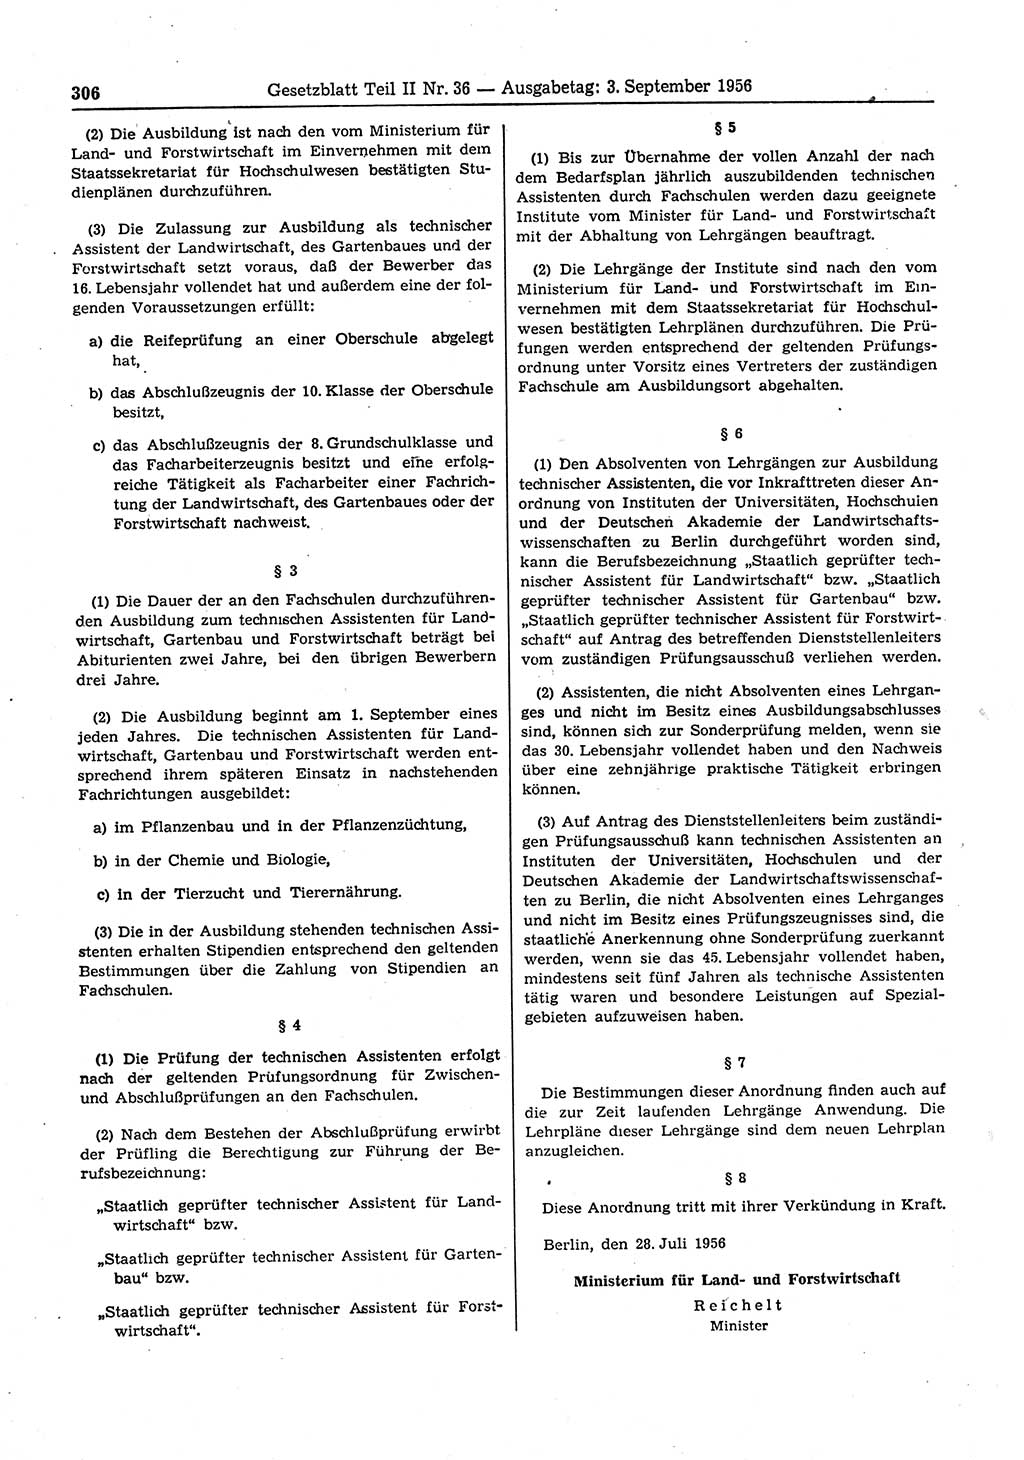 Gesetzblatt (GBl.) der Deutschen Demokratischen Republik (DDR) Teil ⅠⅠ 1956, Seite 306 (GBl. DDR ⅠⅠ 1956, S. 306)